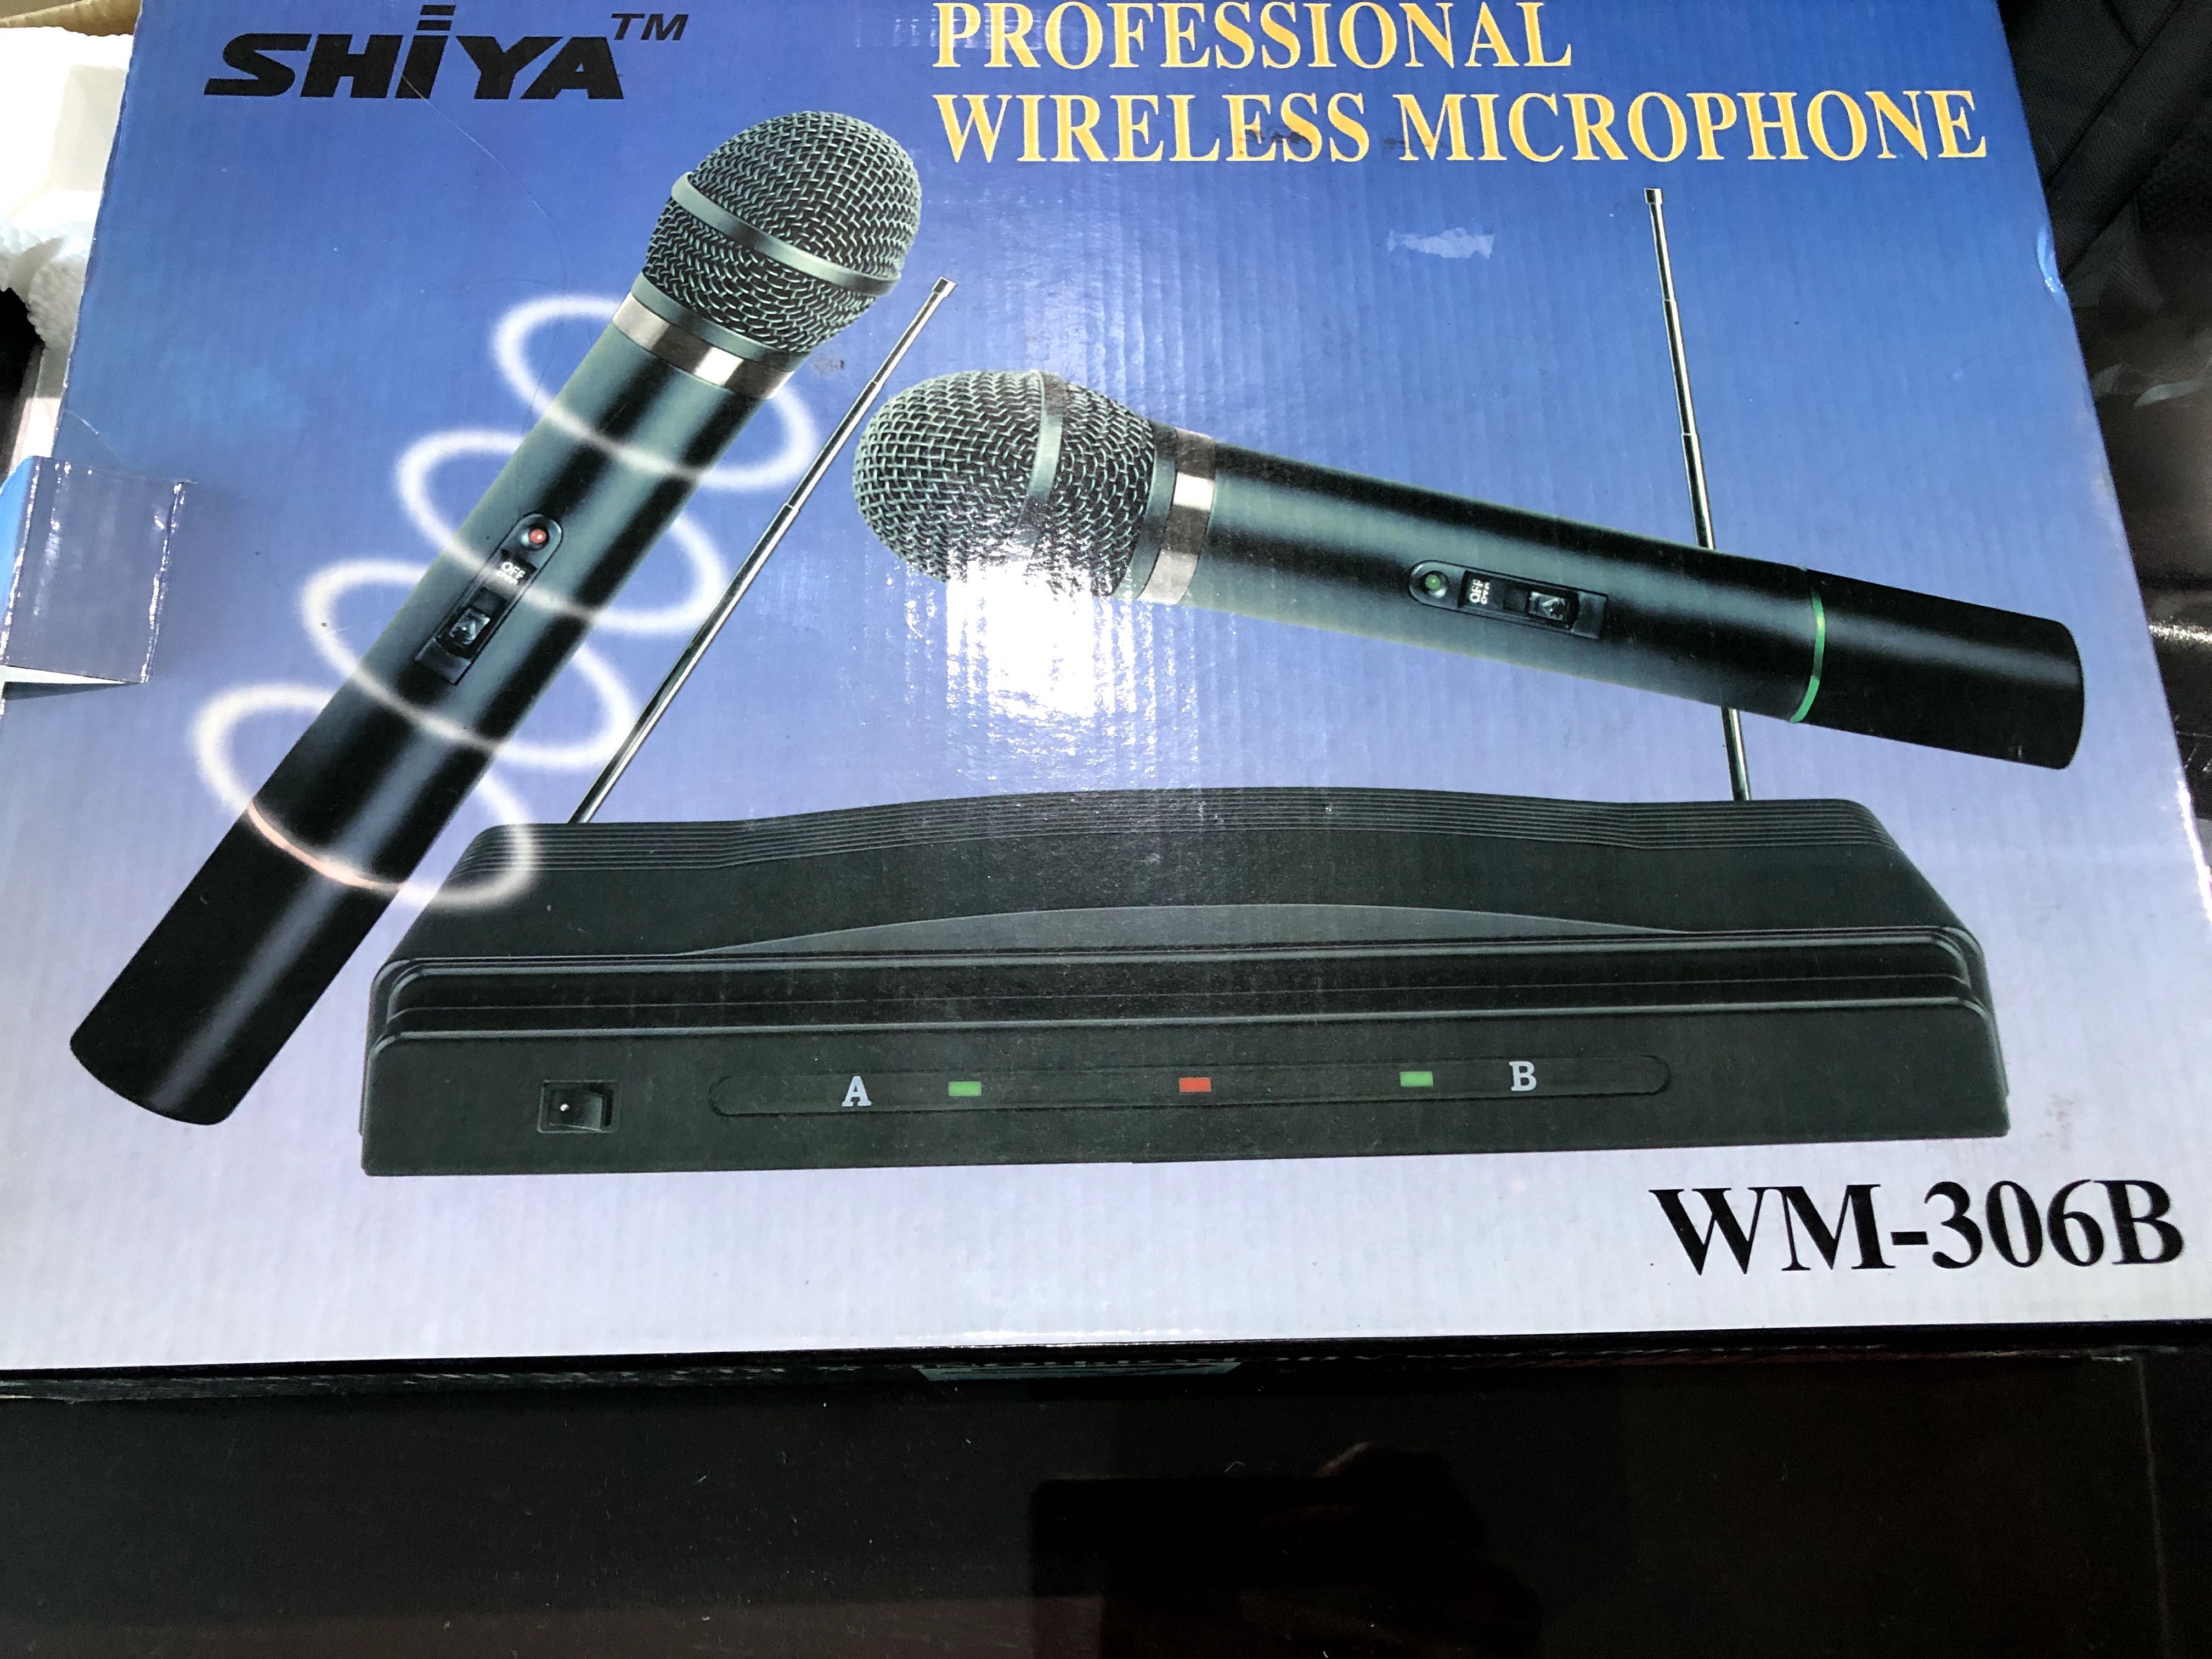 2 Microfones sem fio, com base, novo na caixa